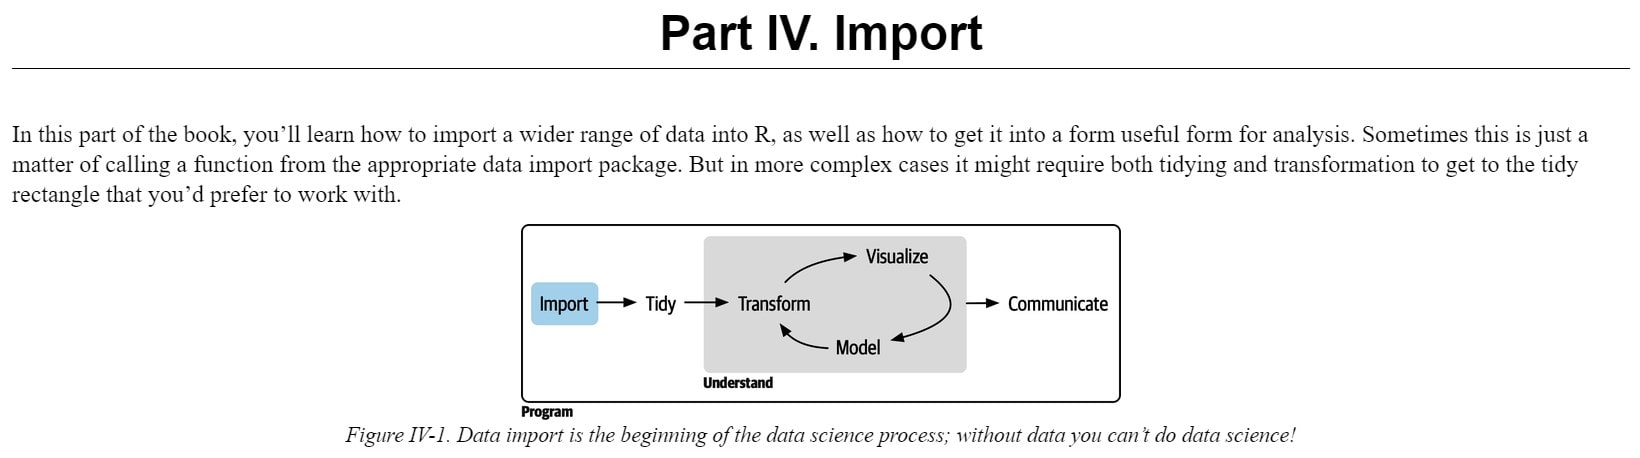 بخش 4 کتاب R for Data Science ویرایش دوم